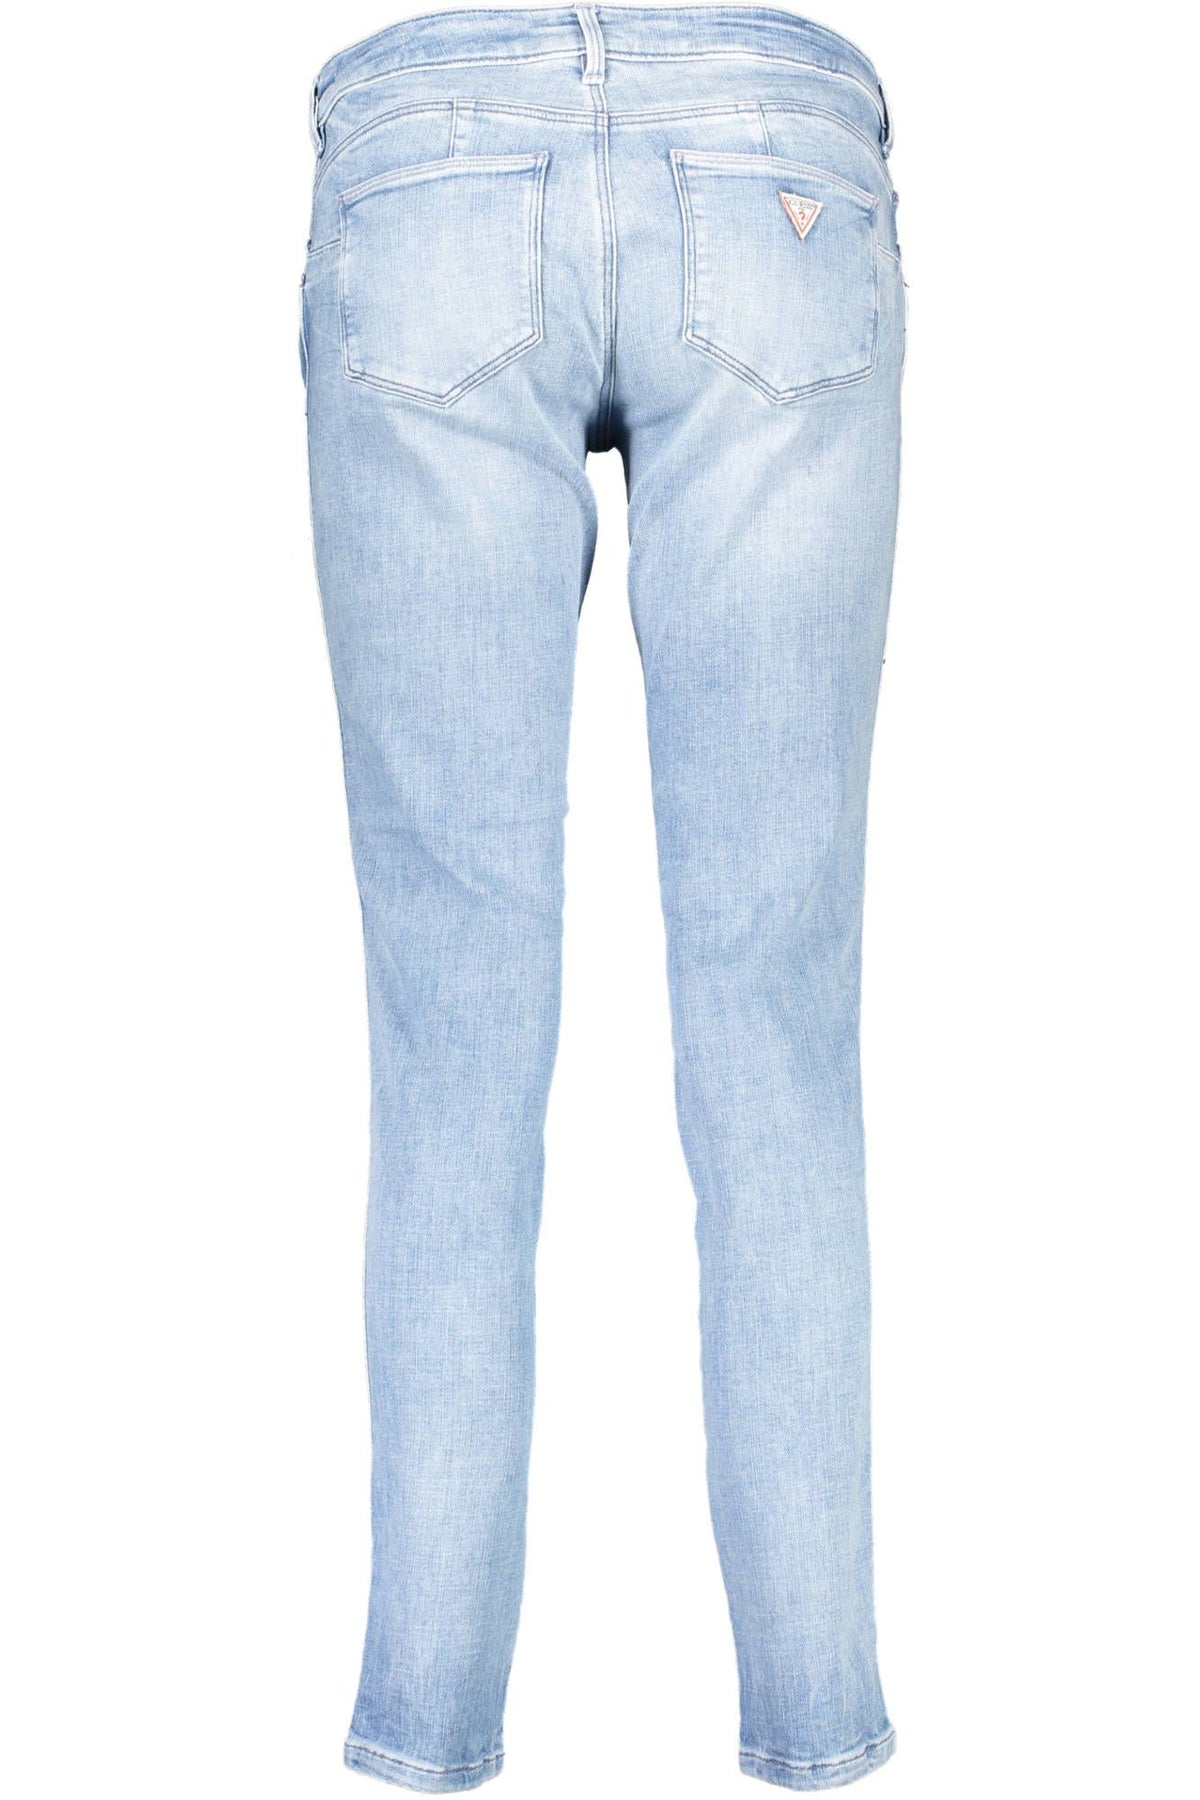 Guess Jeans – Schicke Skinny-Jeans in Hellblau mit mittelhohem Bund